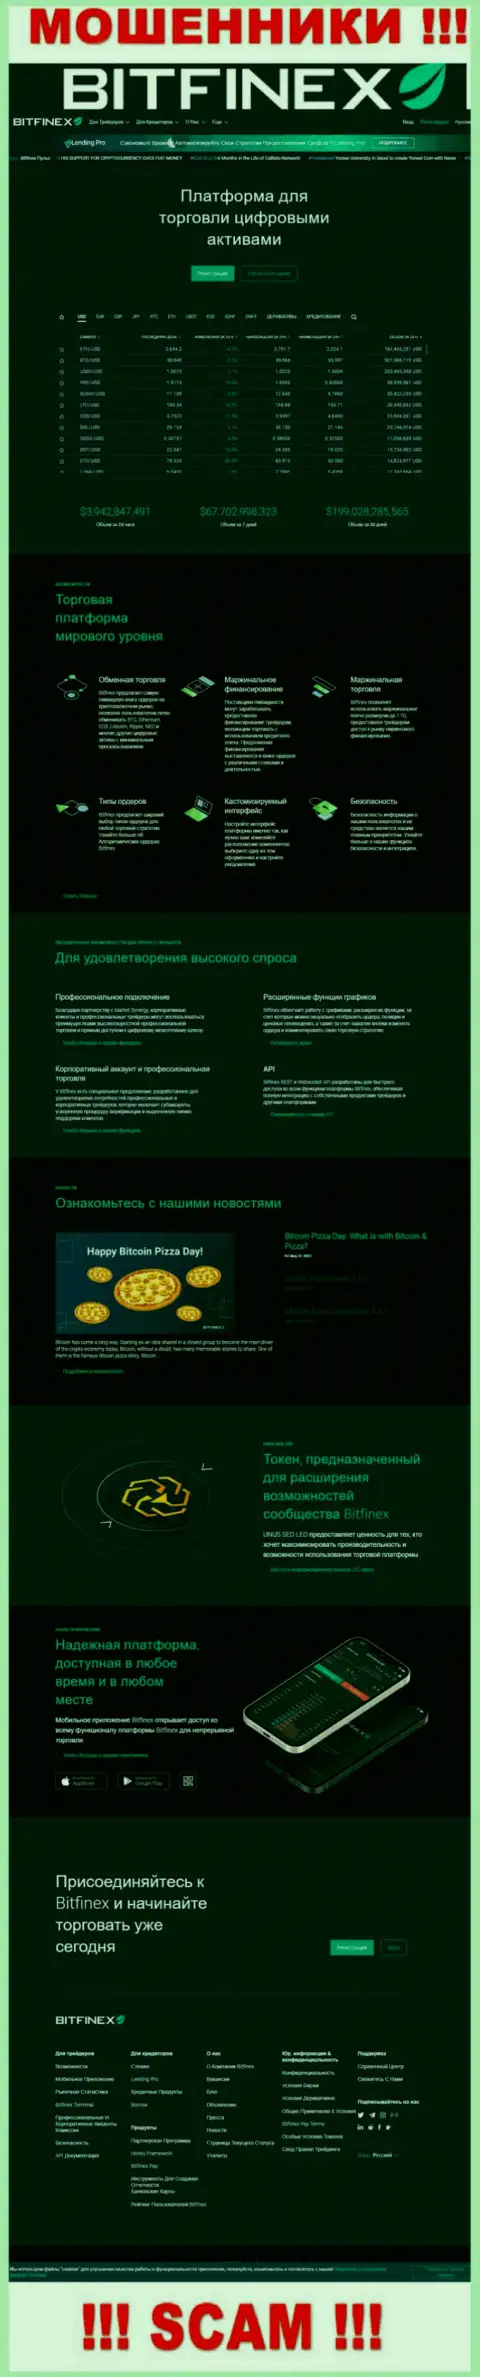 Лживая информация от мошенников Bitfinex Com у них на официальном интернет-портале Bitfinex Com